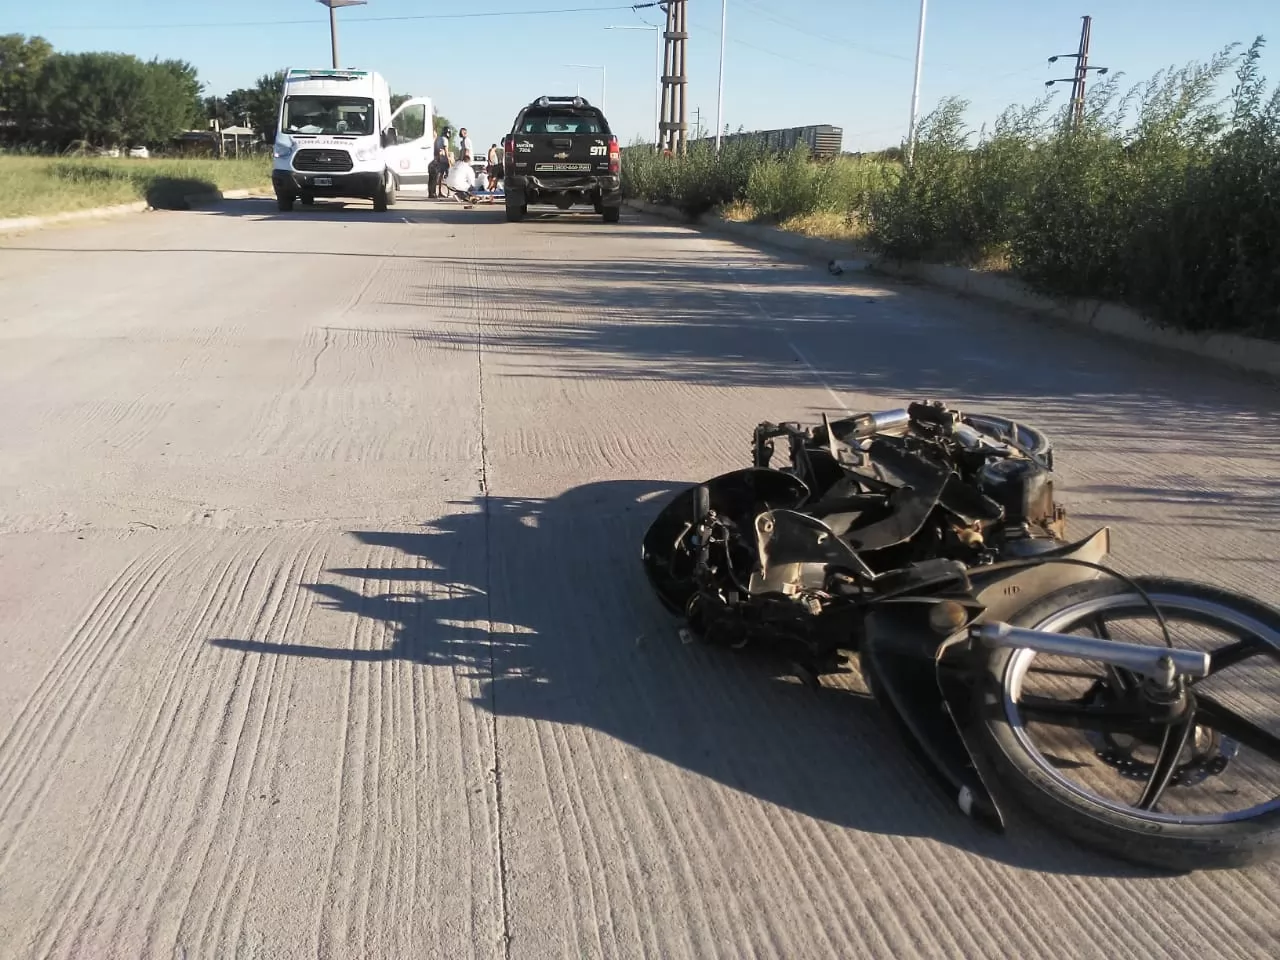 El motociclista fallecido en un accidente en Beltrán tenía 17 años